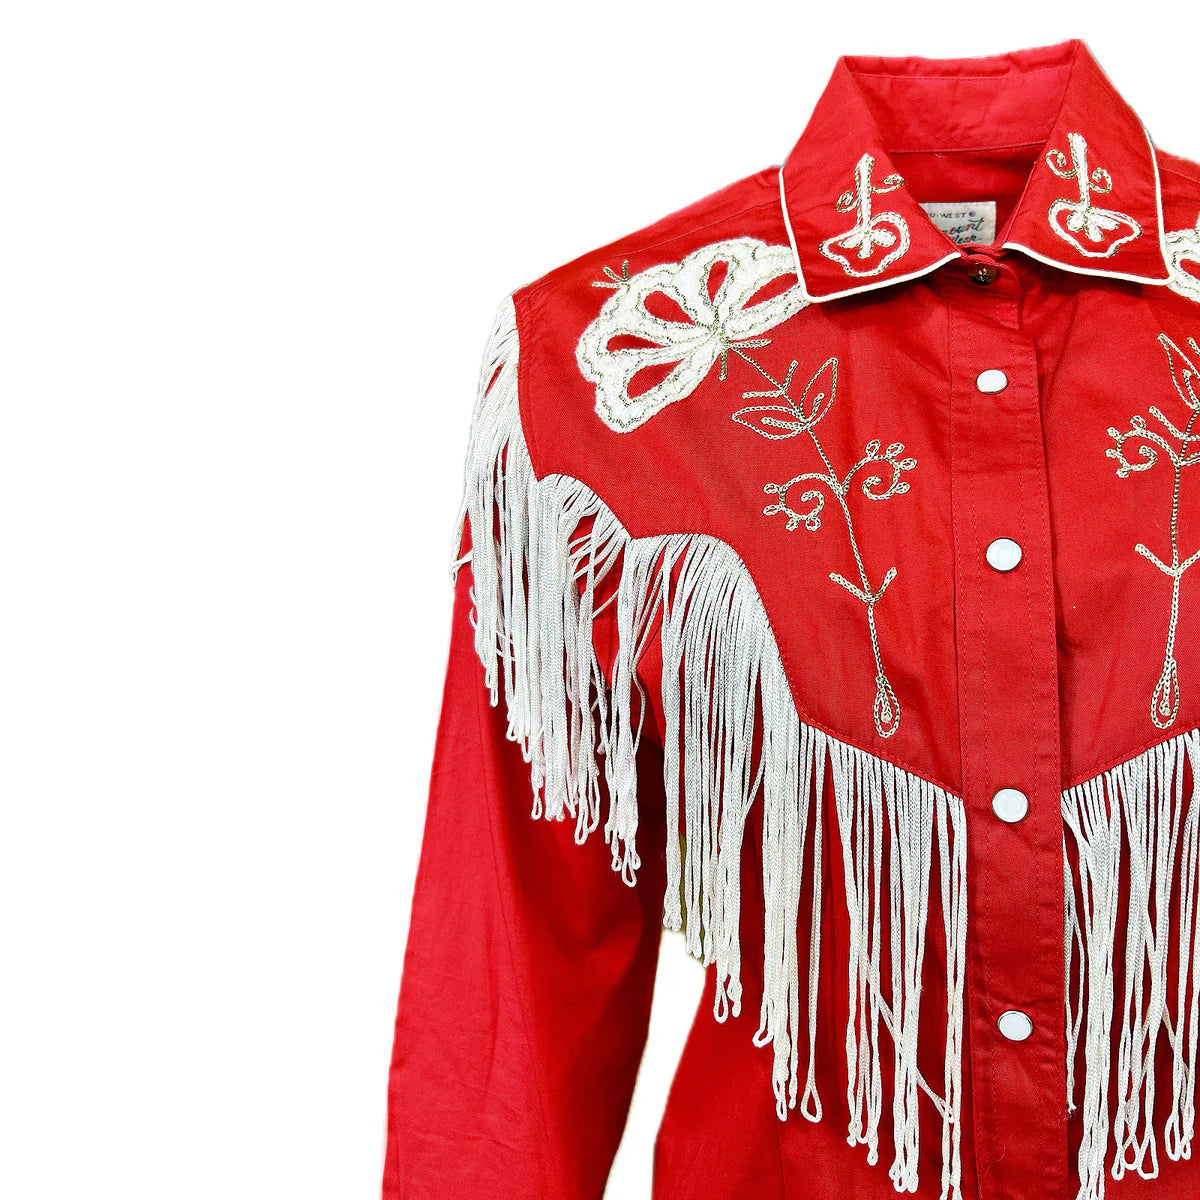 Vintage Inspired Western Shirt Ladies Rockmount Fringe Red Front